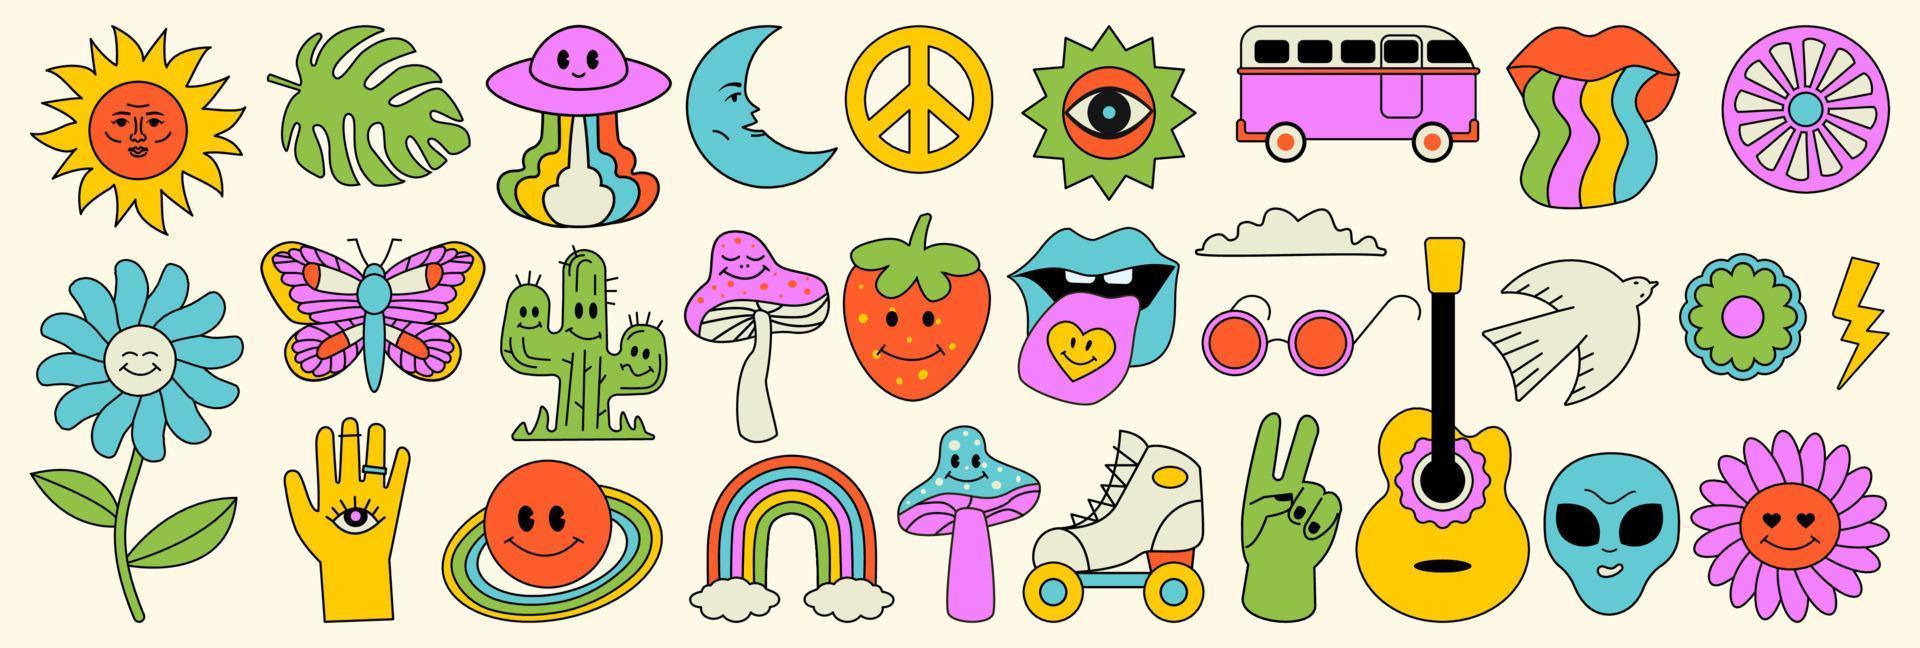 elementos al estilo hippie de los años 70, una colección de groove psicodélico. setas graciosas de dibujos animados, flores, mariposas, alienígenas, arco iris, nostálgico colorido conjunto de formas vectoriales. vector